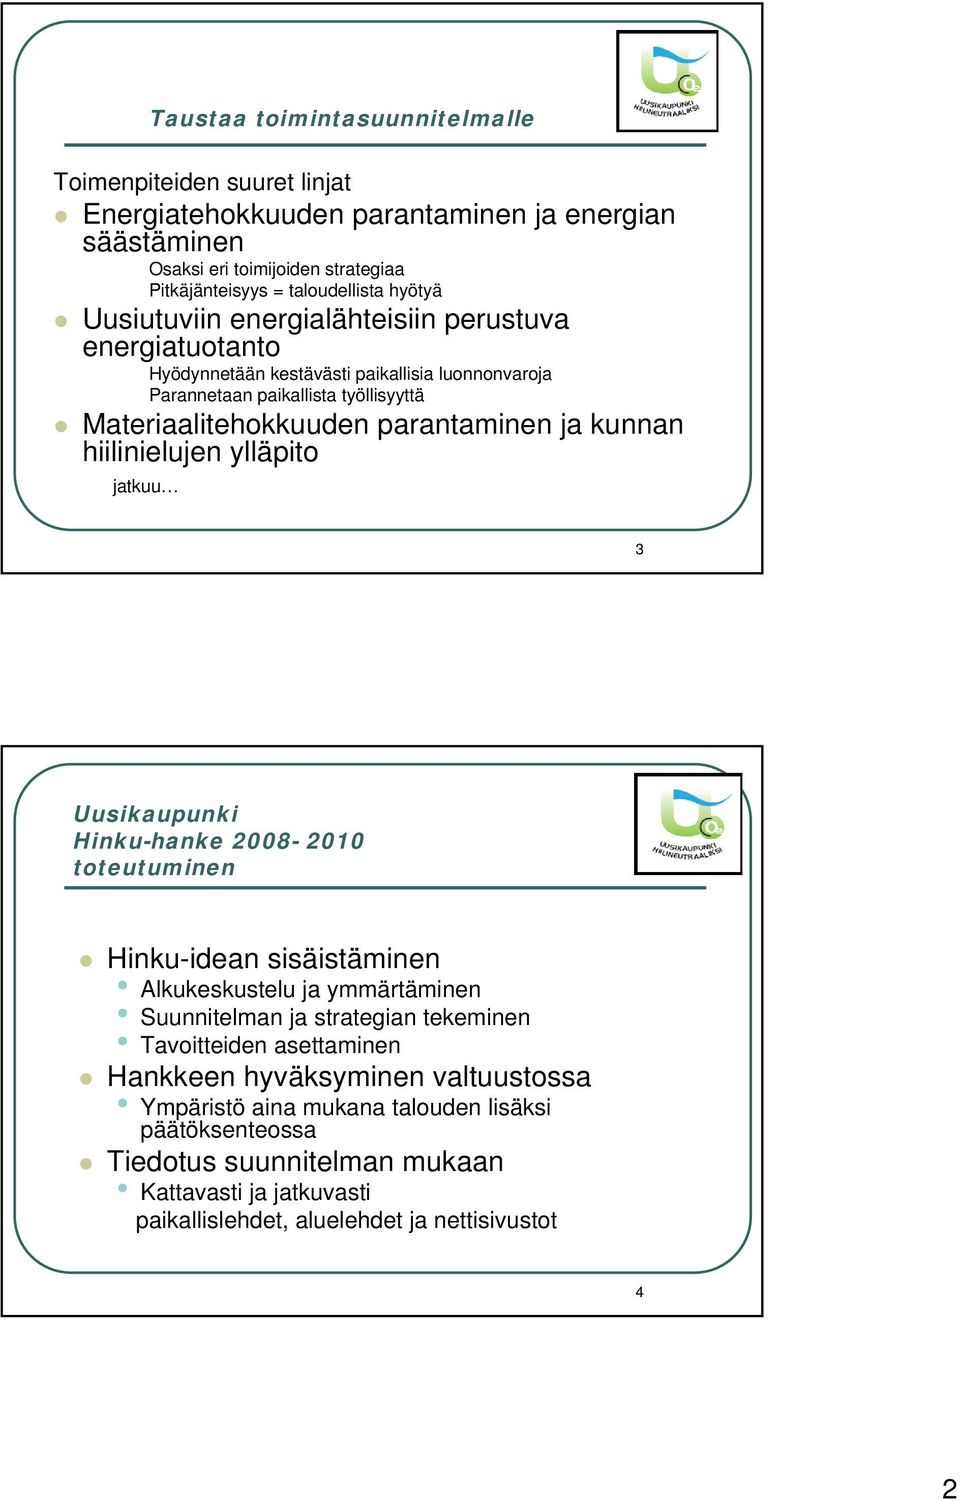 kunnan hiilinielujen ylläpito jatkuu 3 Hinku-hanke 2008-2010 toteutuminen Hinku-idean sisäistäminen Alkukeskustelu ja ymmärtäminen Suunnitelman ja strategian tekeminen Tavoitteiden